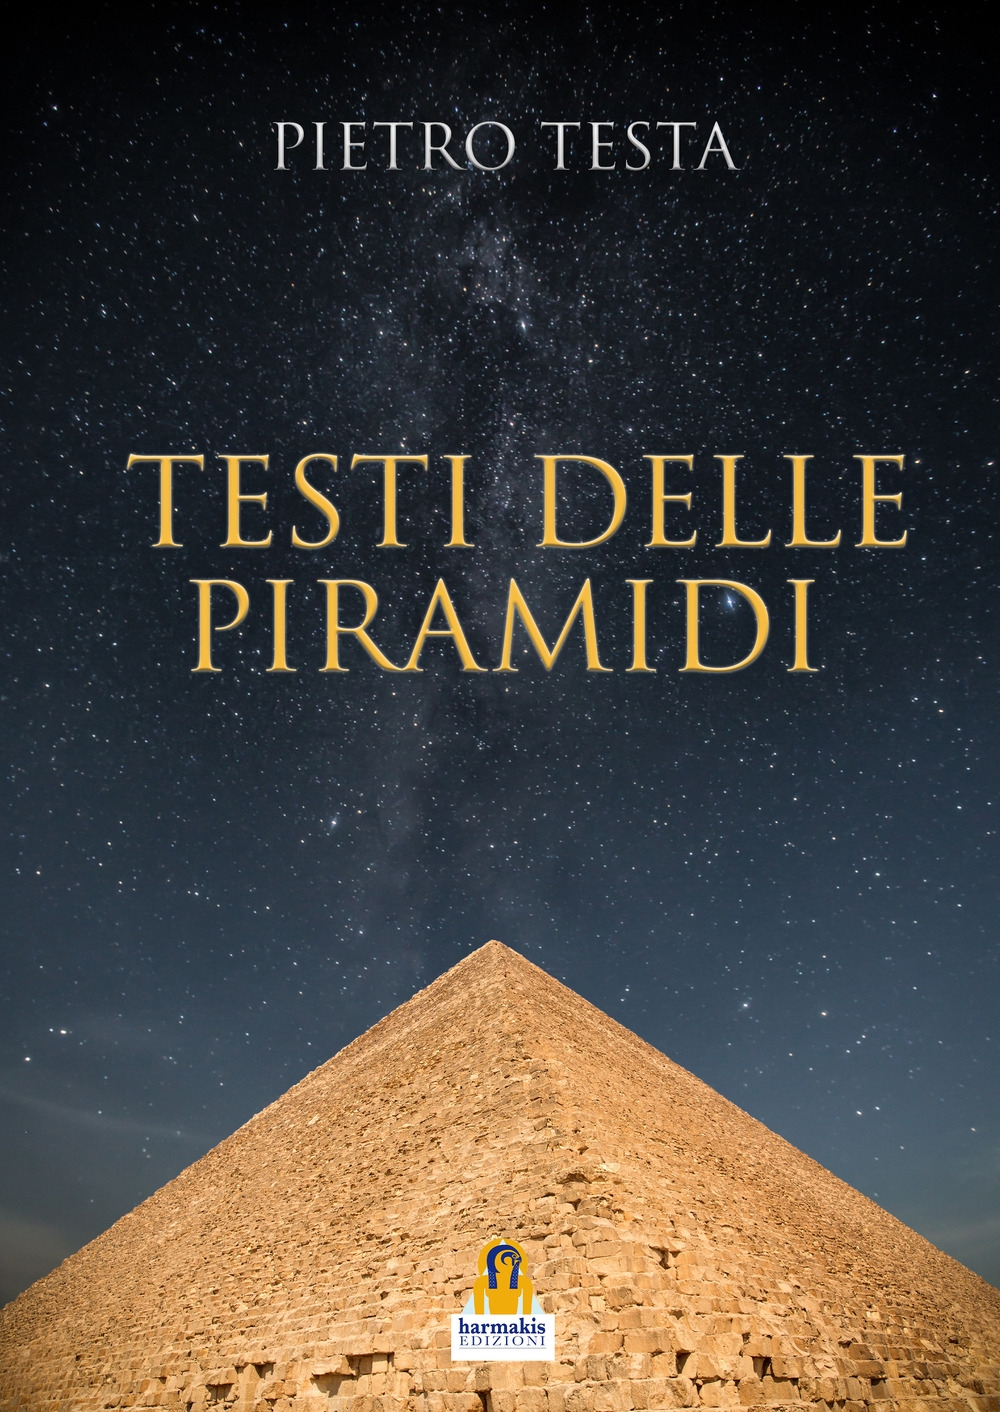 Libri Pietro Testa - Testi Delle Piramidi NUOVO SIGILLATO, EDIZIONE DEL 14/05/2020 SUBITO DISPONIBILE